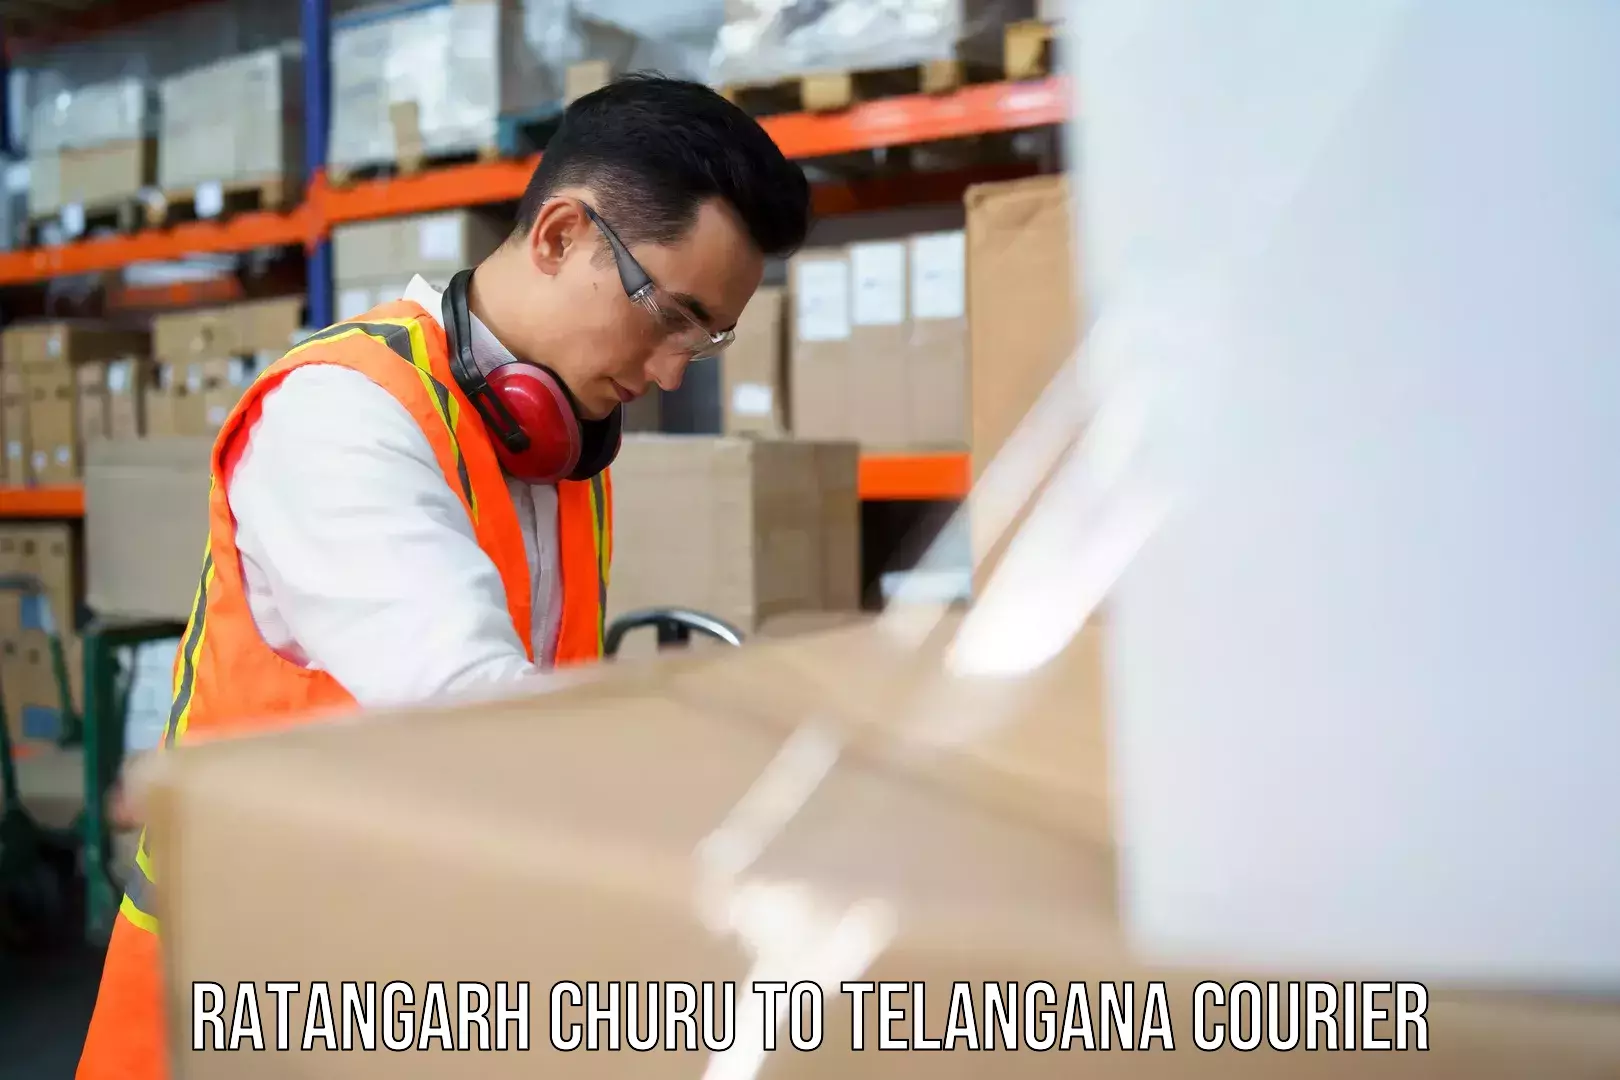 Nationwide shipping coverage Ratangarh Churu to Achampet